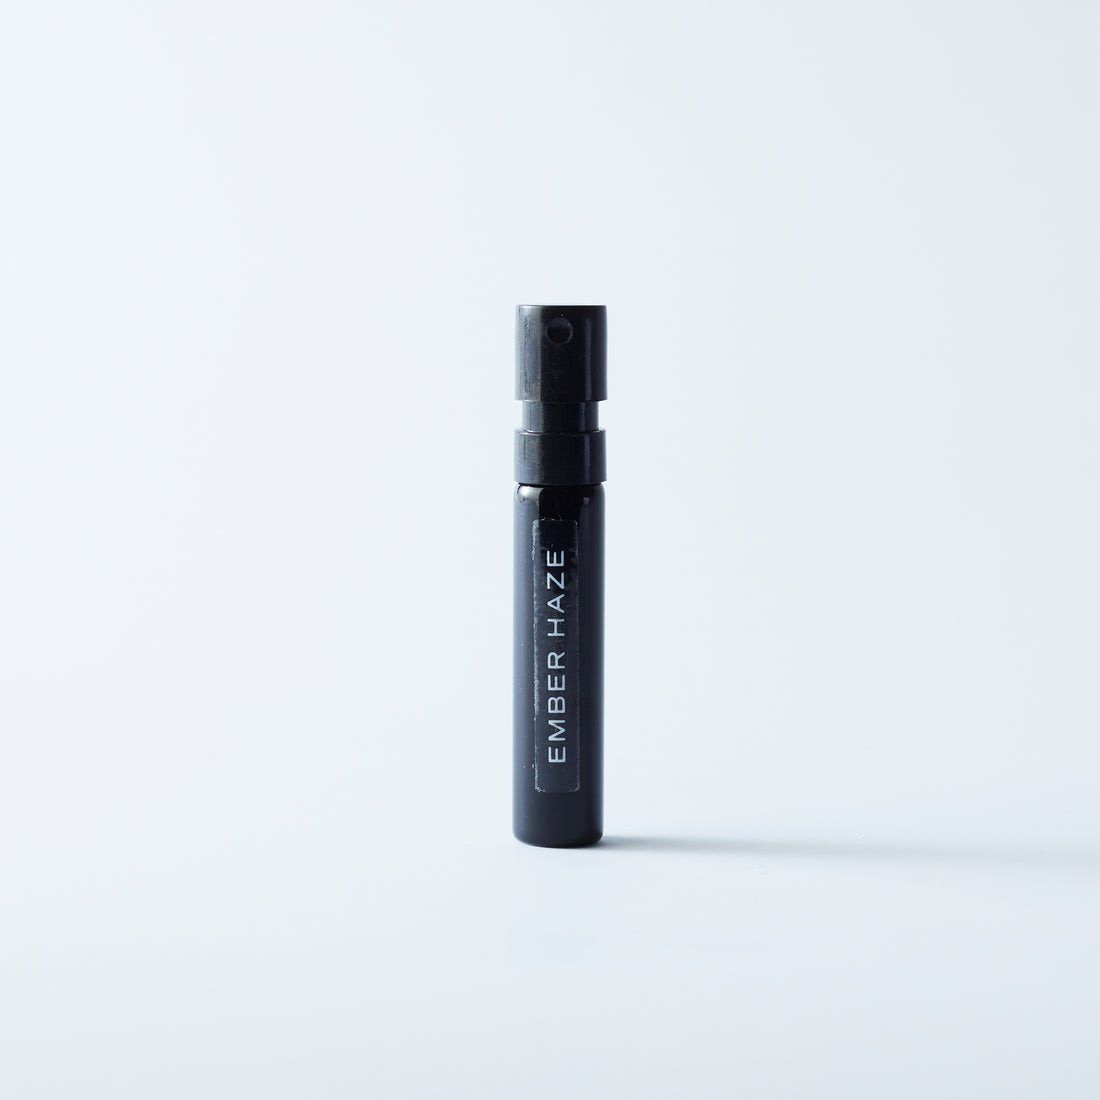 Natural perfume Ember Haze in 2ml sample